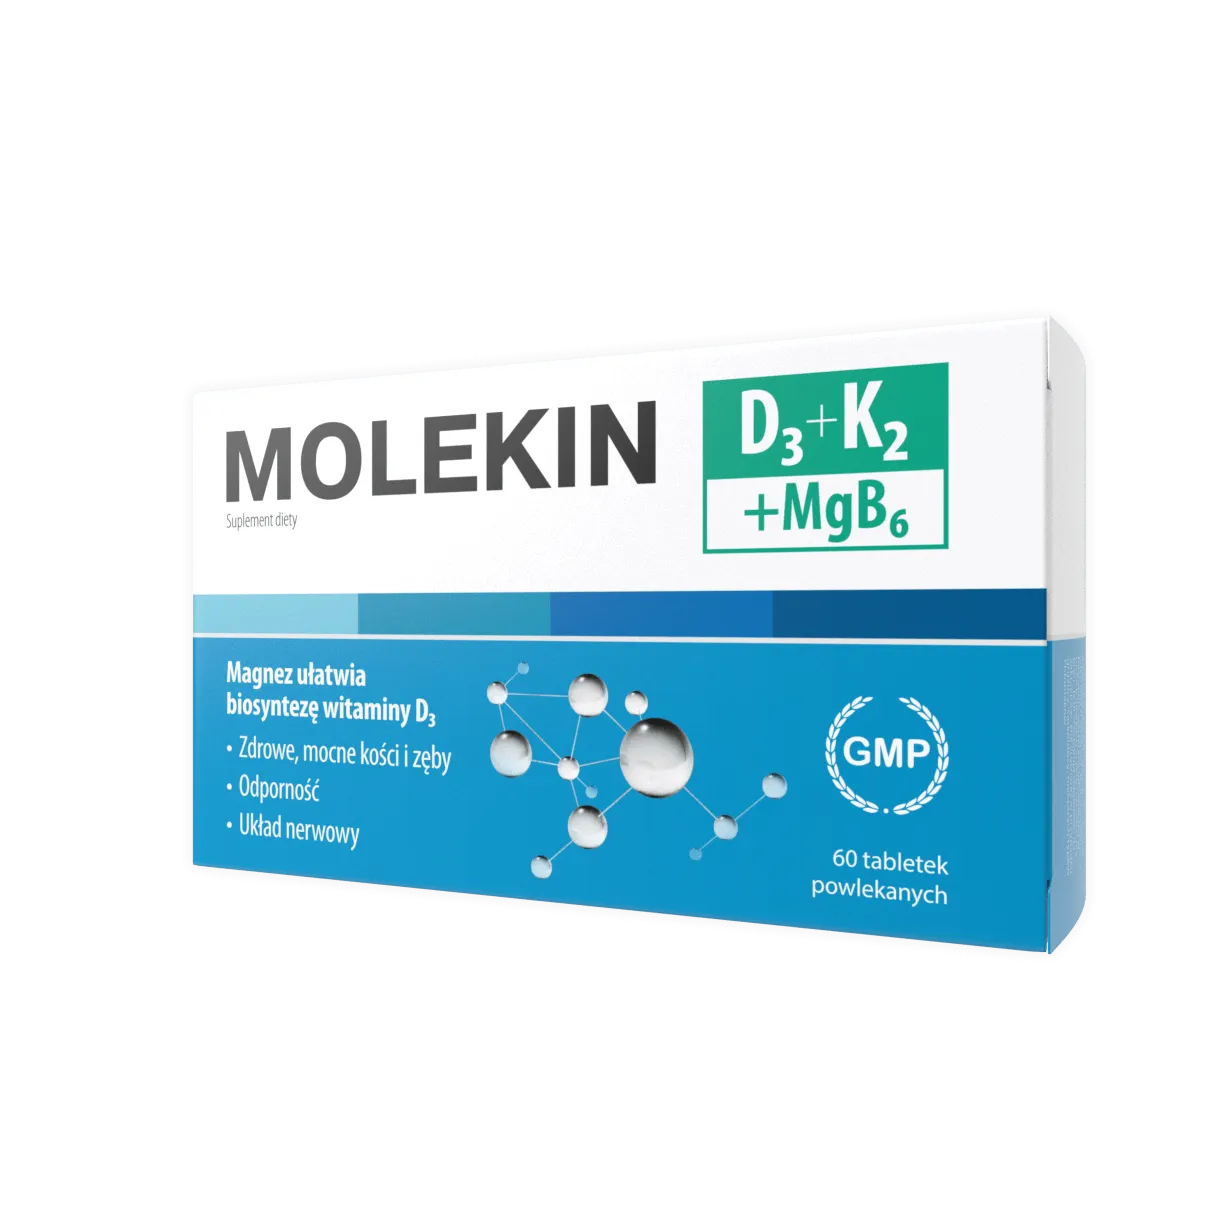 Molekin D3 + K2 + MgB6, suplement diety, 60 tabletek